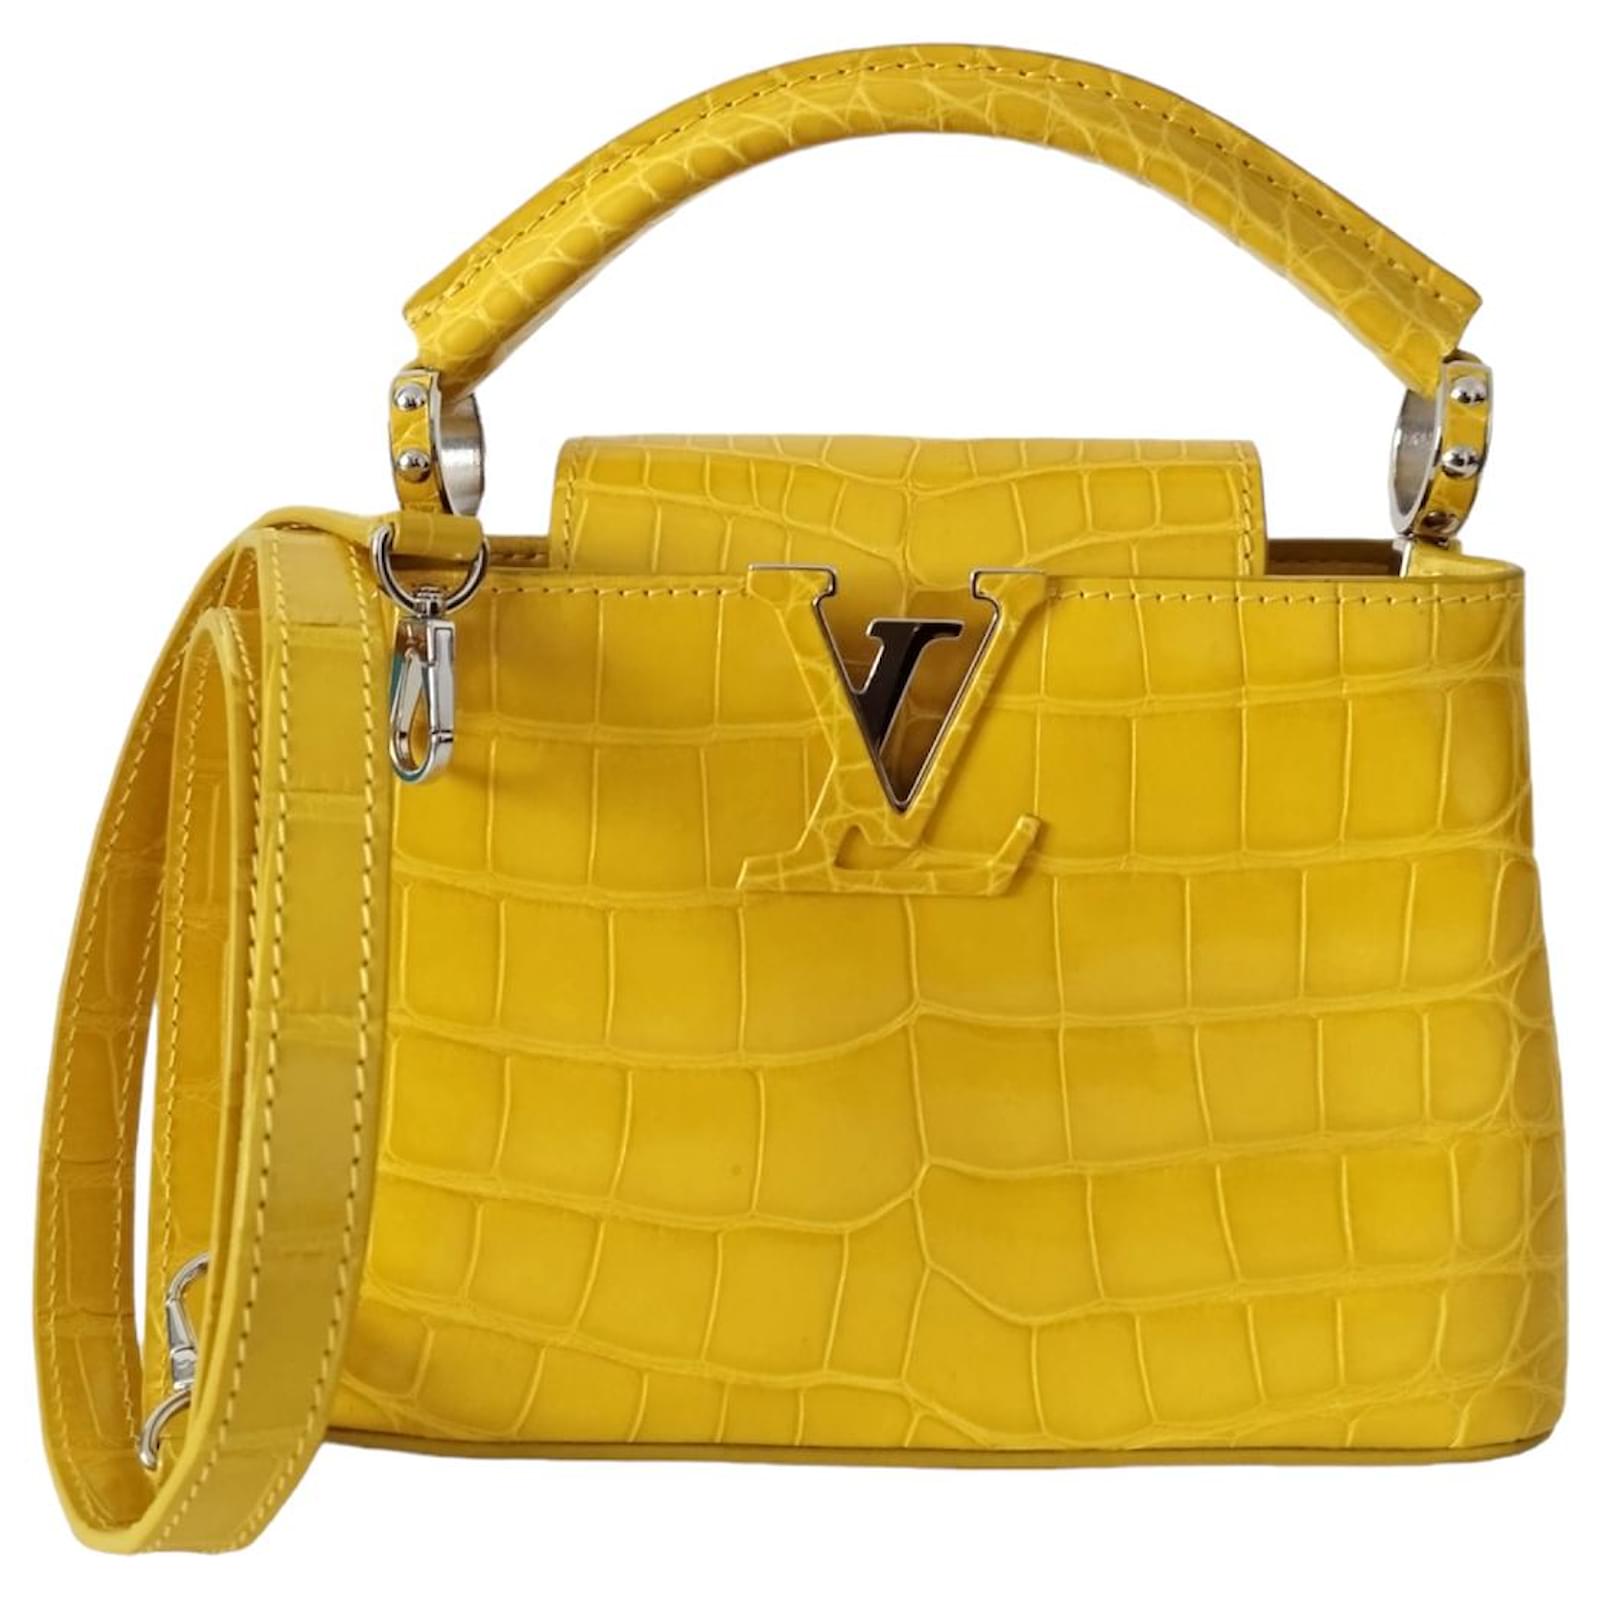 Louis Vuitton Capucines Mini in yellow alligator Exotic leather